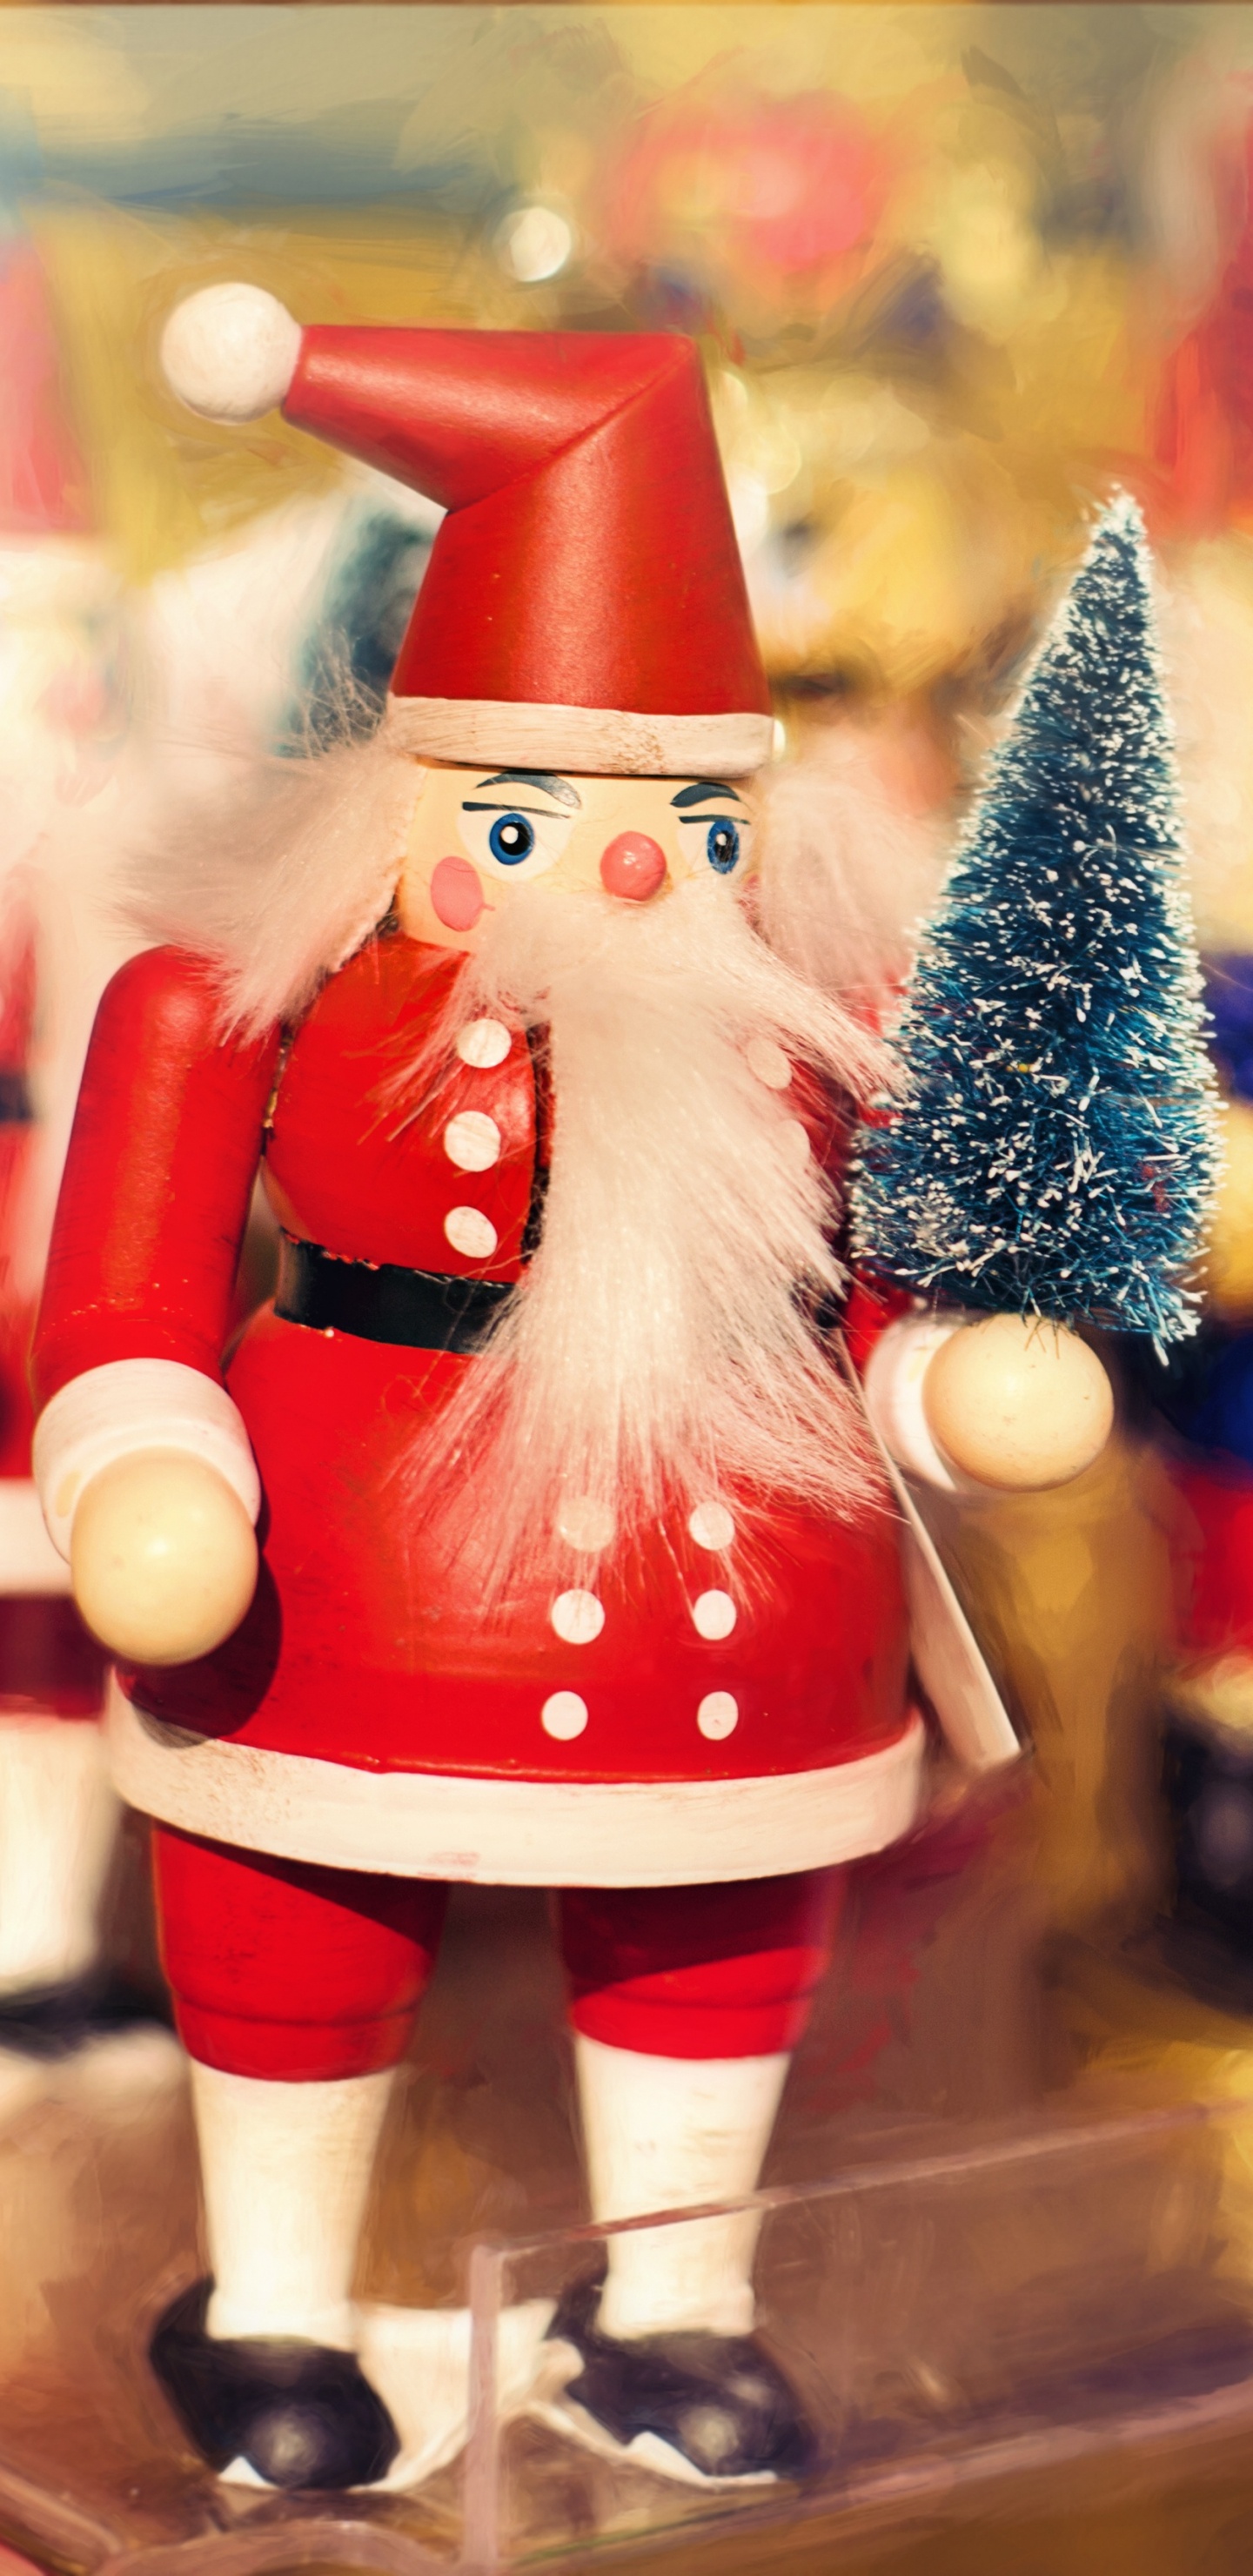 Weihnachten, Weihnachtsmann, Nussknacker, Spielzeug, Christmas Ornament. Wallpaper in 1440x2960 Resolution